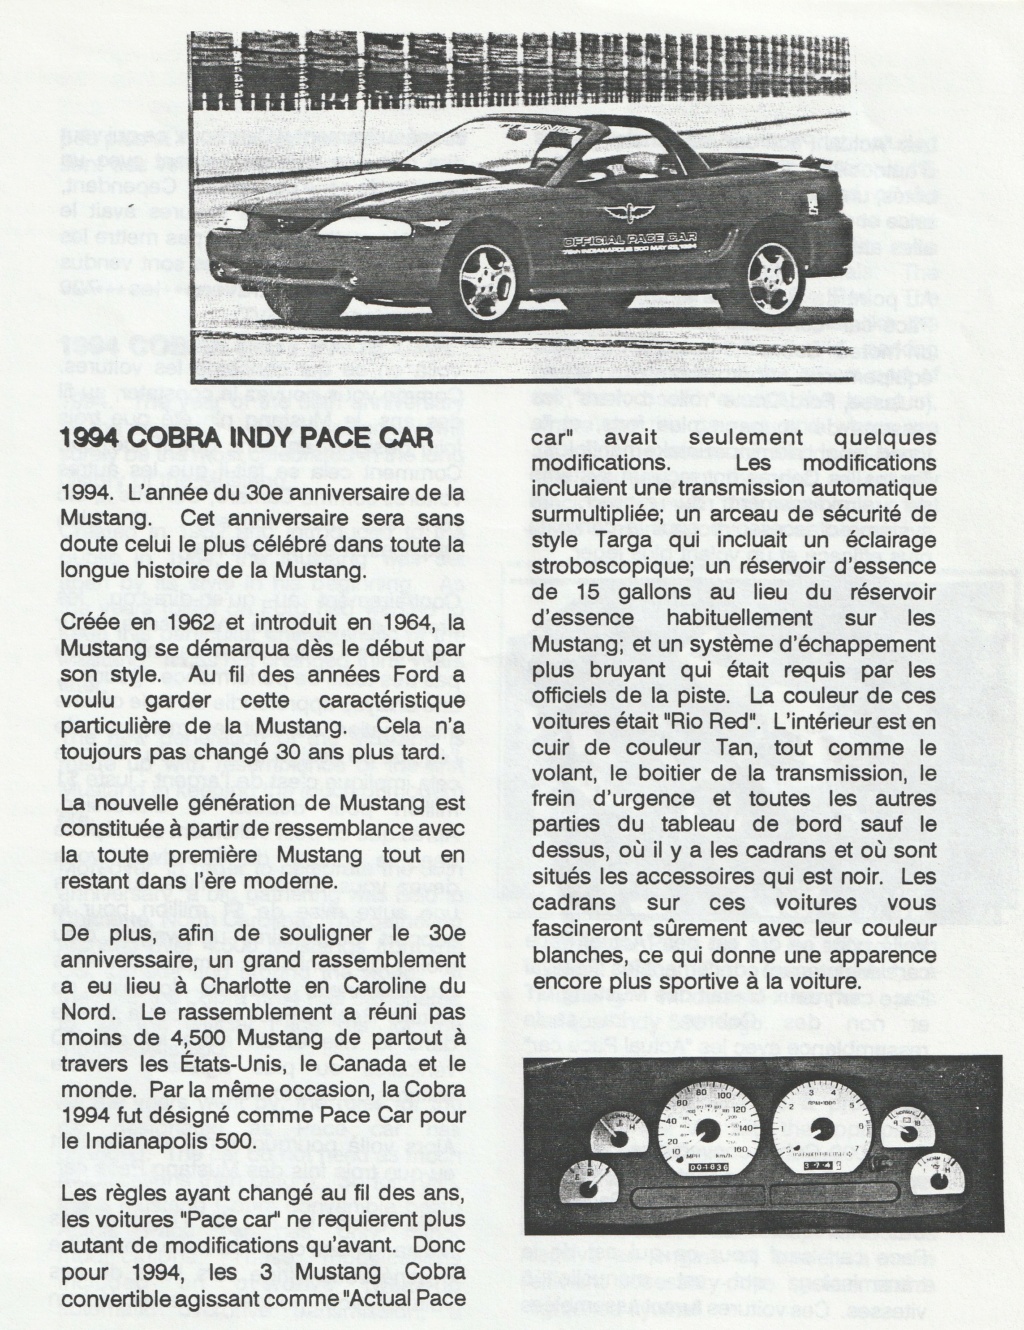 Montréal Mustang dans le temps! 1981 à aujourd'hui (Histoire en photos) - Page 8 Img_2467